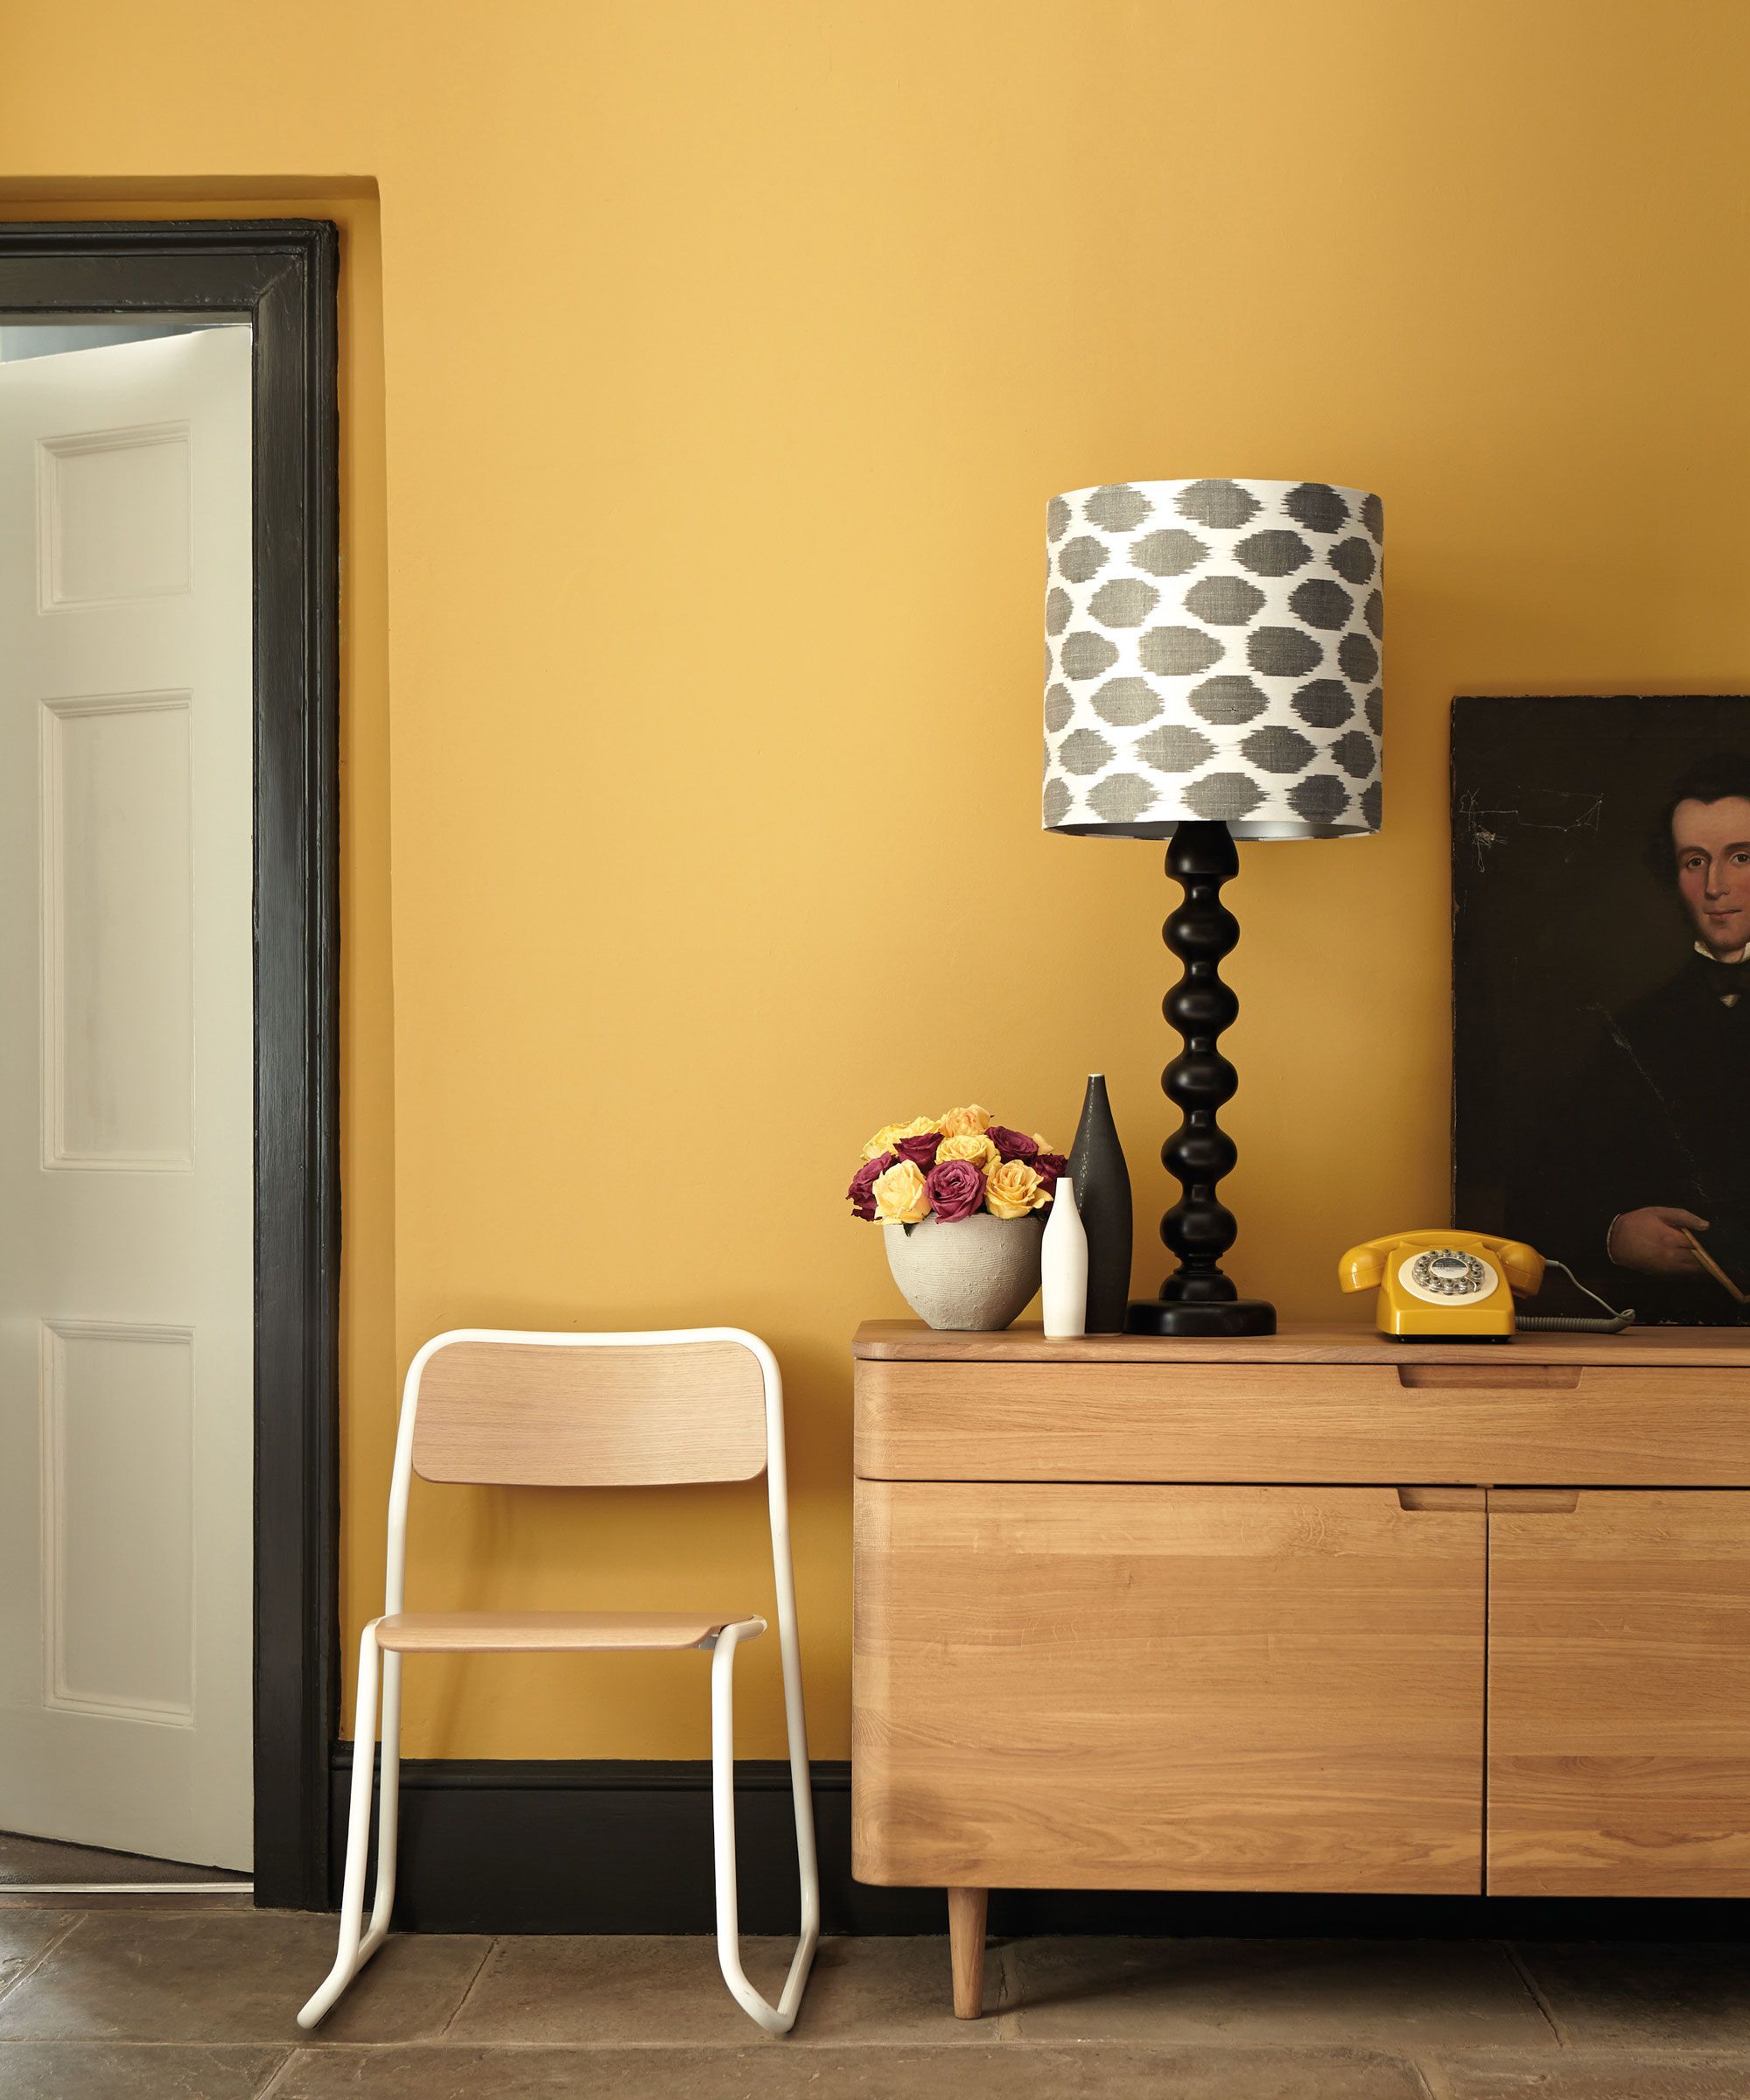 vardagsrum måla ideer: gult rum